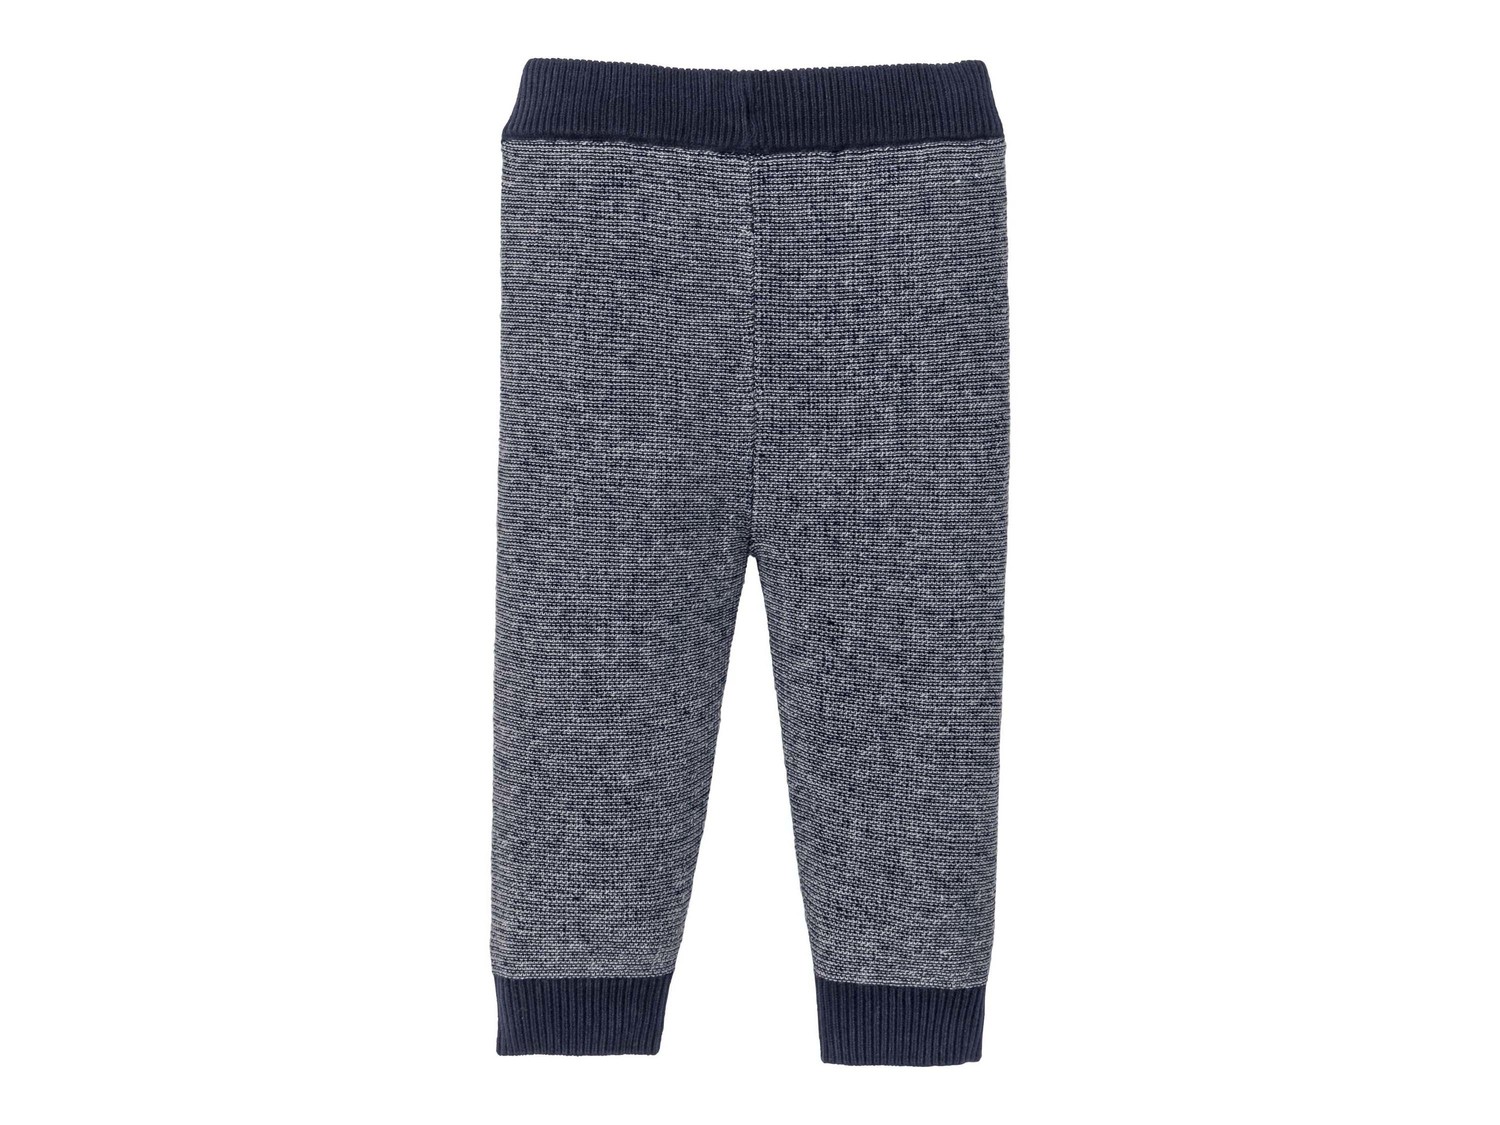 Pantaloni da neonati Lupilu, prezzo 5.99 &#8364;  
-  In puro cotone
- GOTS